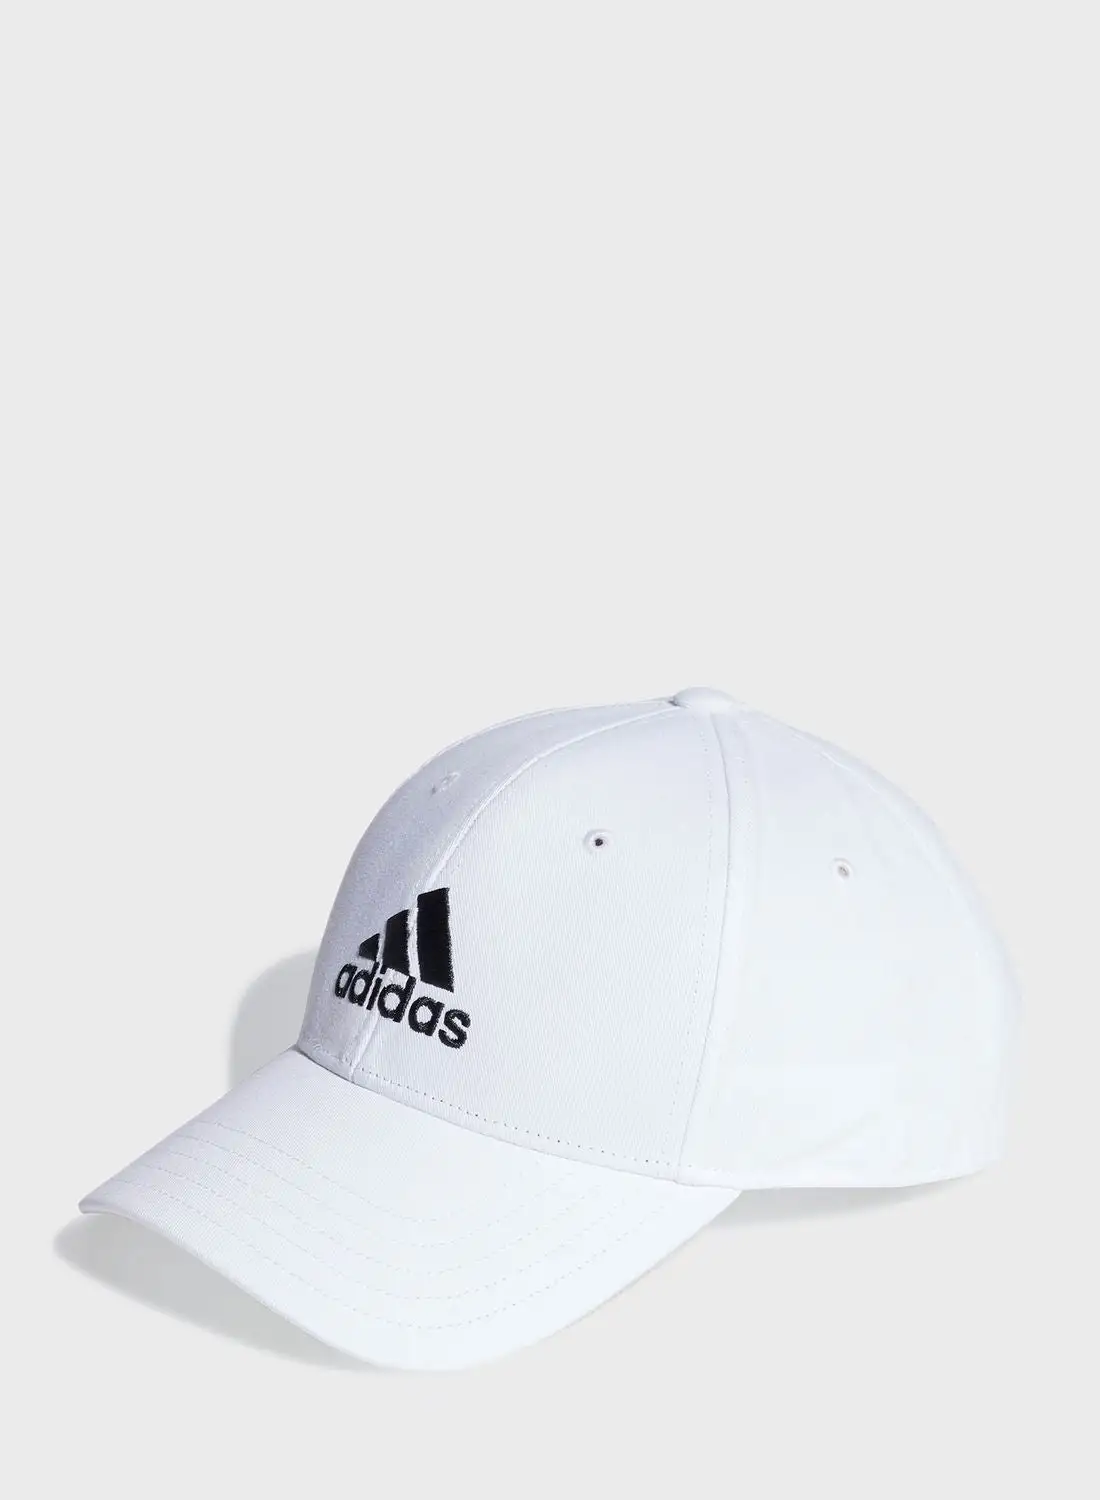 Adidas Baseball Cap